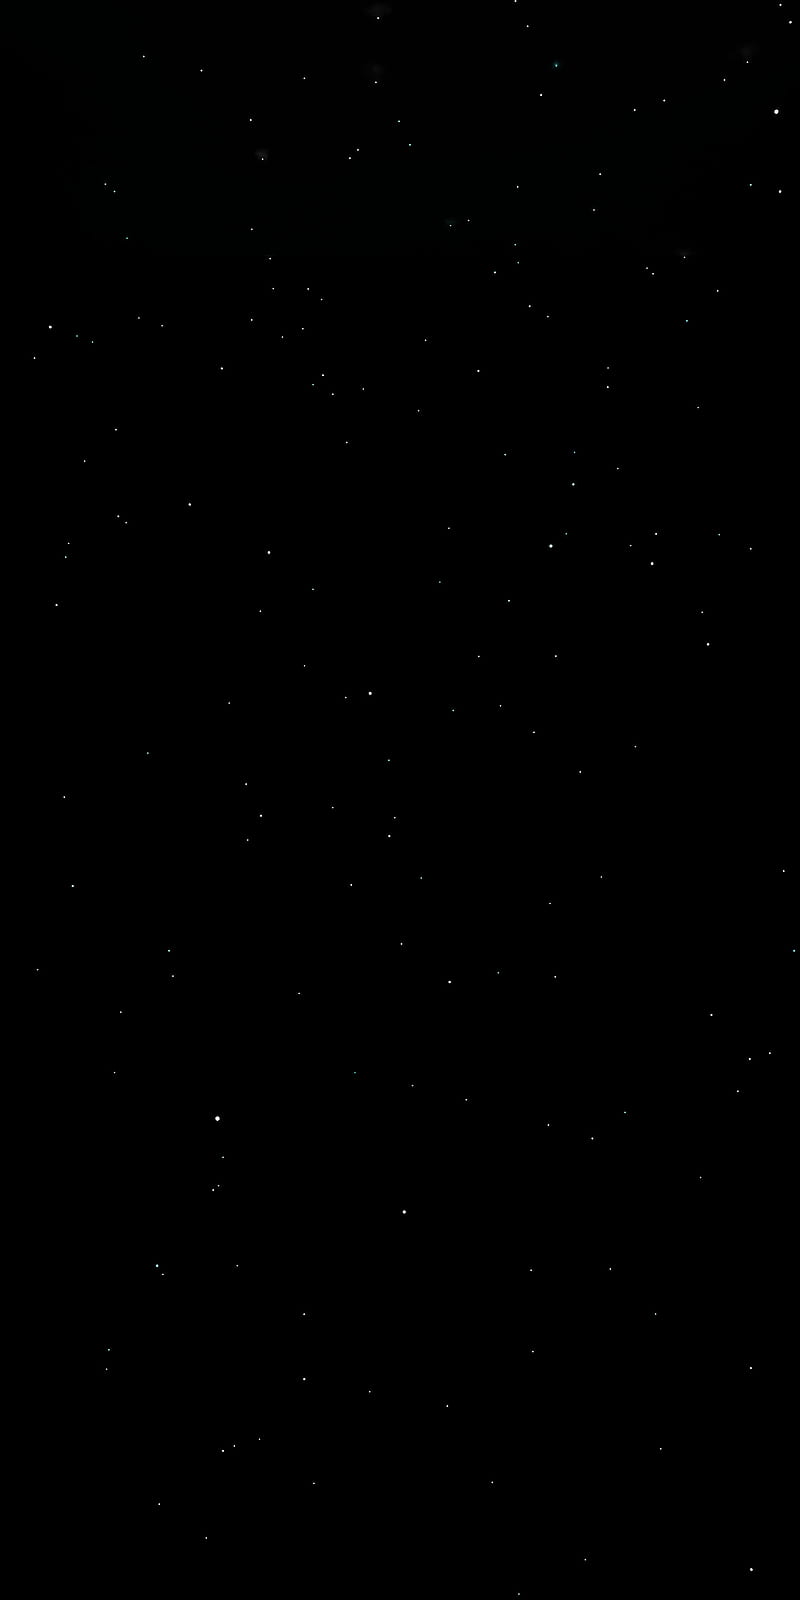 Vào đúng thời điểm, hãy thưởng thức hình nền tuyệt vời của Ngôi sao tinh tế với tông màu đen, thiên nhiên, sao, vũ trụ huyền bí. Những tác phẩm 3D độc đáo này sẽ là một trải nghiệm hấp dẫn cho điện thoại HD của bạn. 